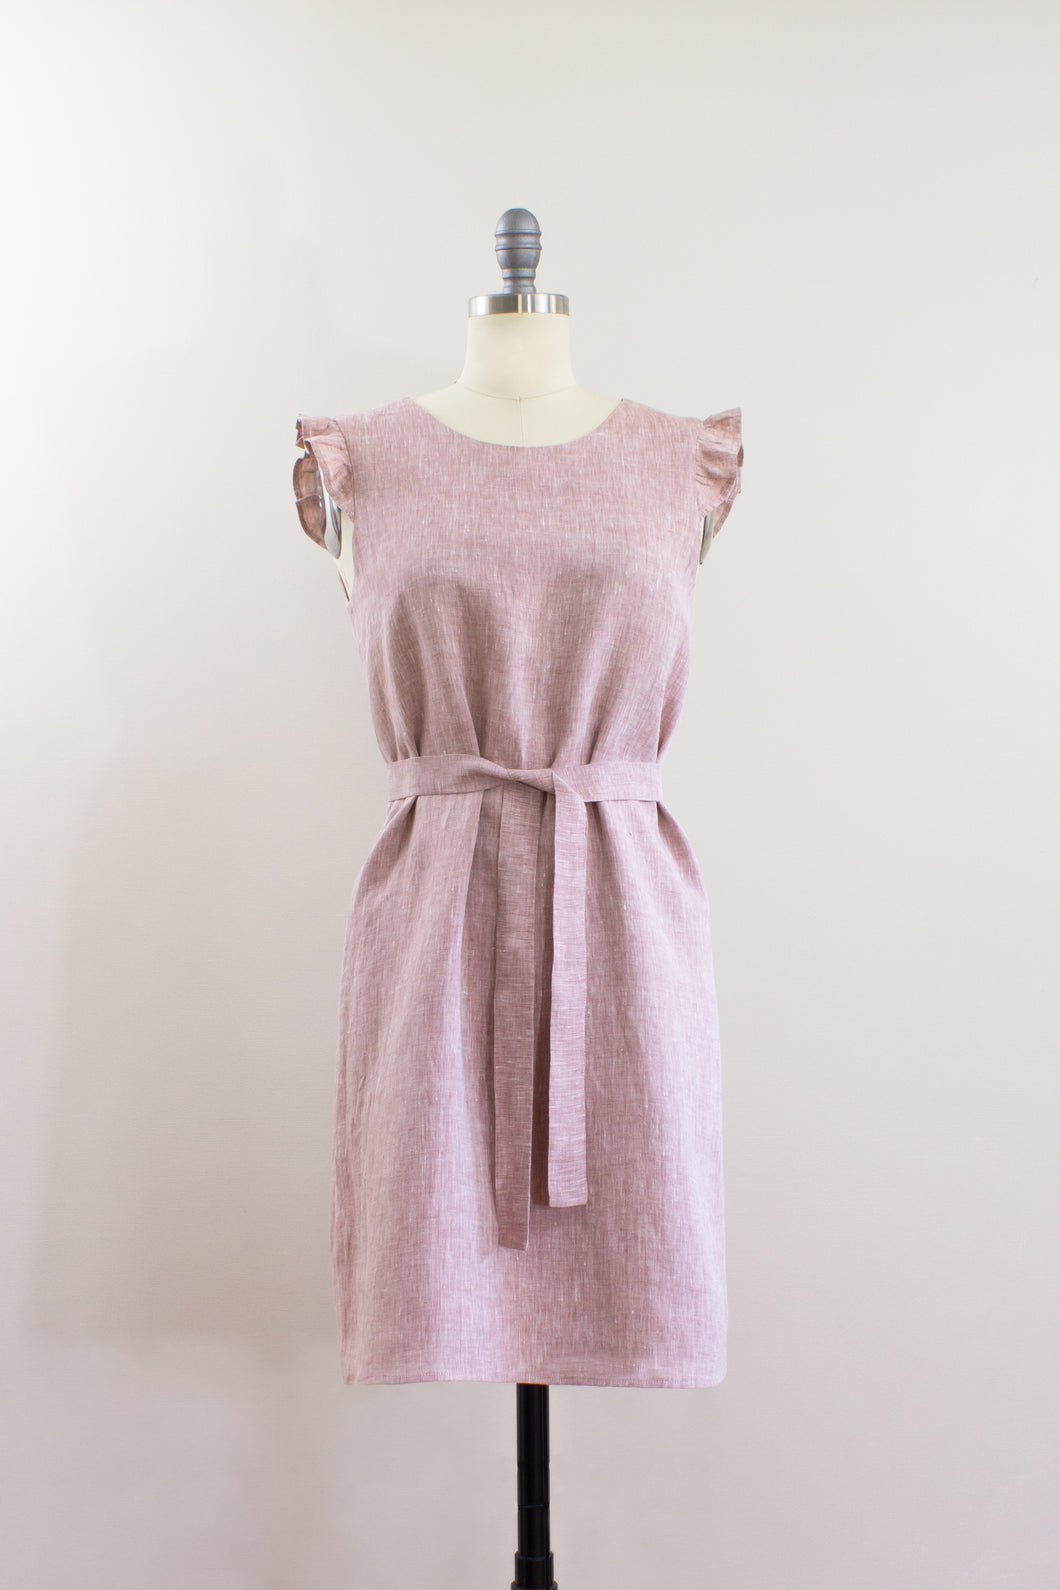 Elisabetta Bellu SS2020 Azalea handmade pink linen loose fit a line short belted shift dress ruffled armholes front